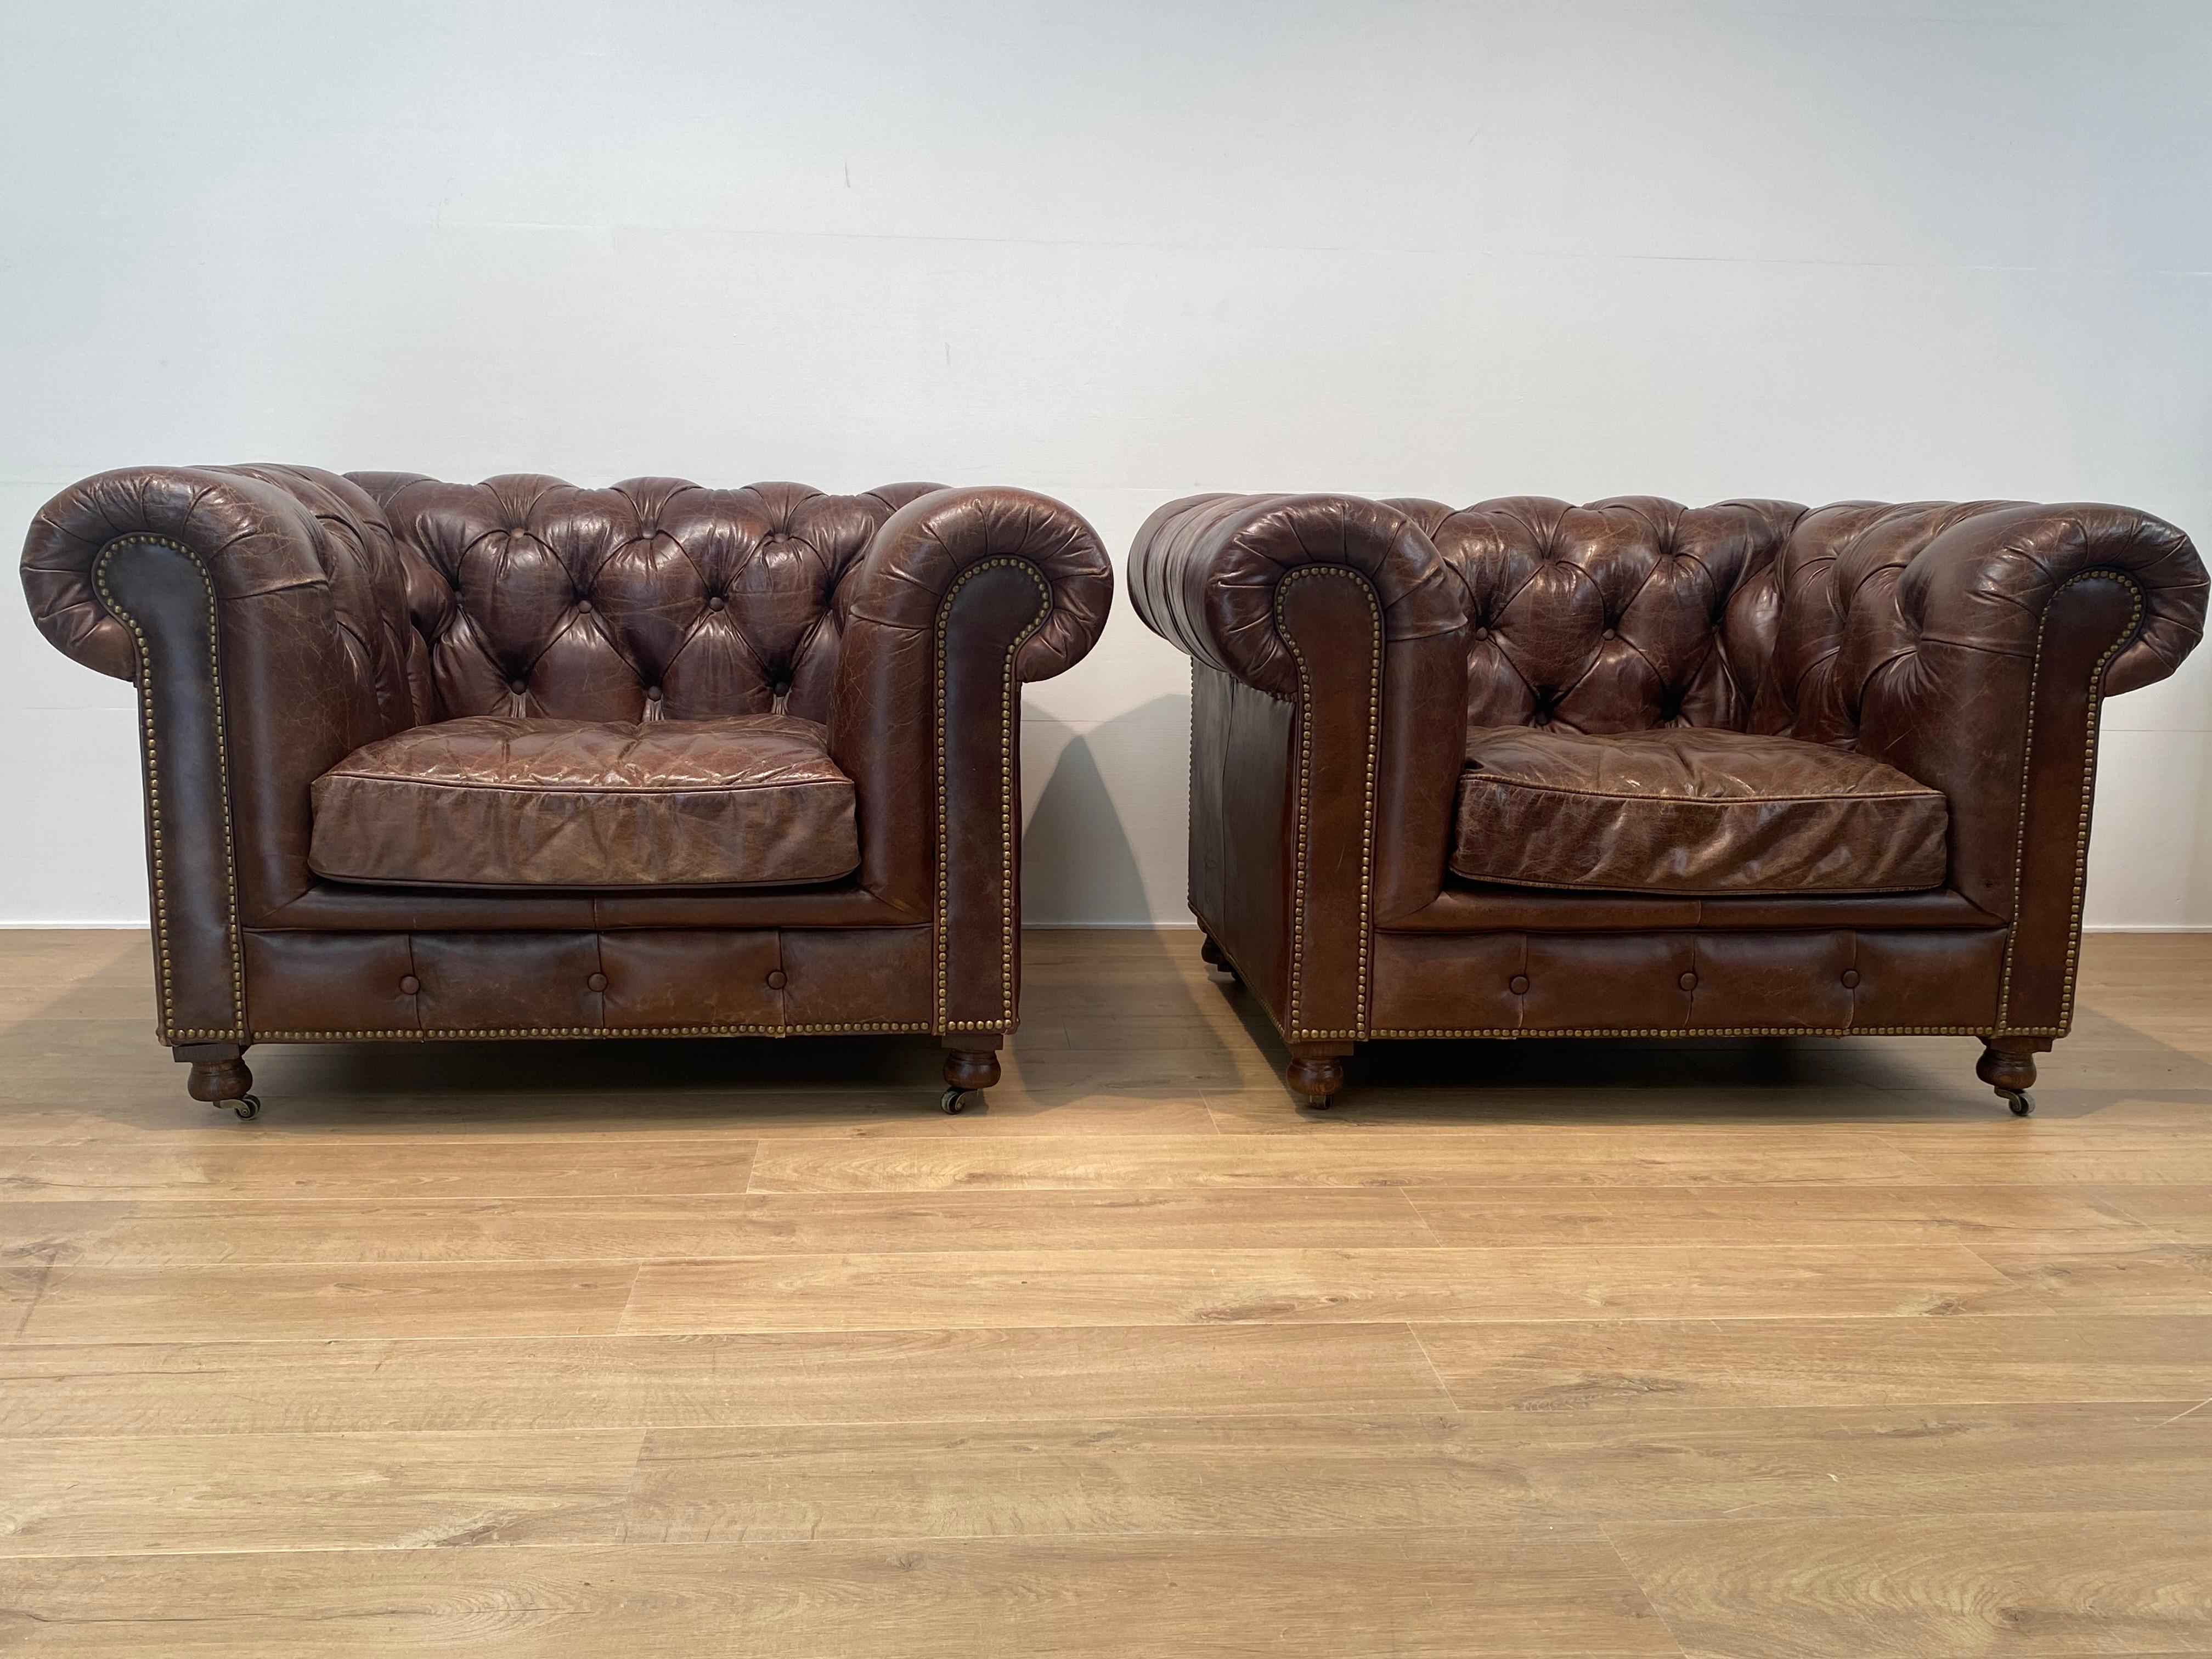 Magnifique paire de fauteuils club Chesterfield en cuir anglais,
Un fauteuil Chesterfield classique de John Lewis avec des accoudoirs à volutes et des boutons, dans le coloris Antique Whiskey,
siège très confortable, les chaises sont en parfait état
